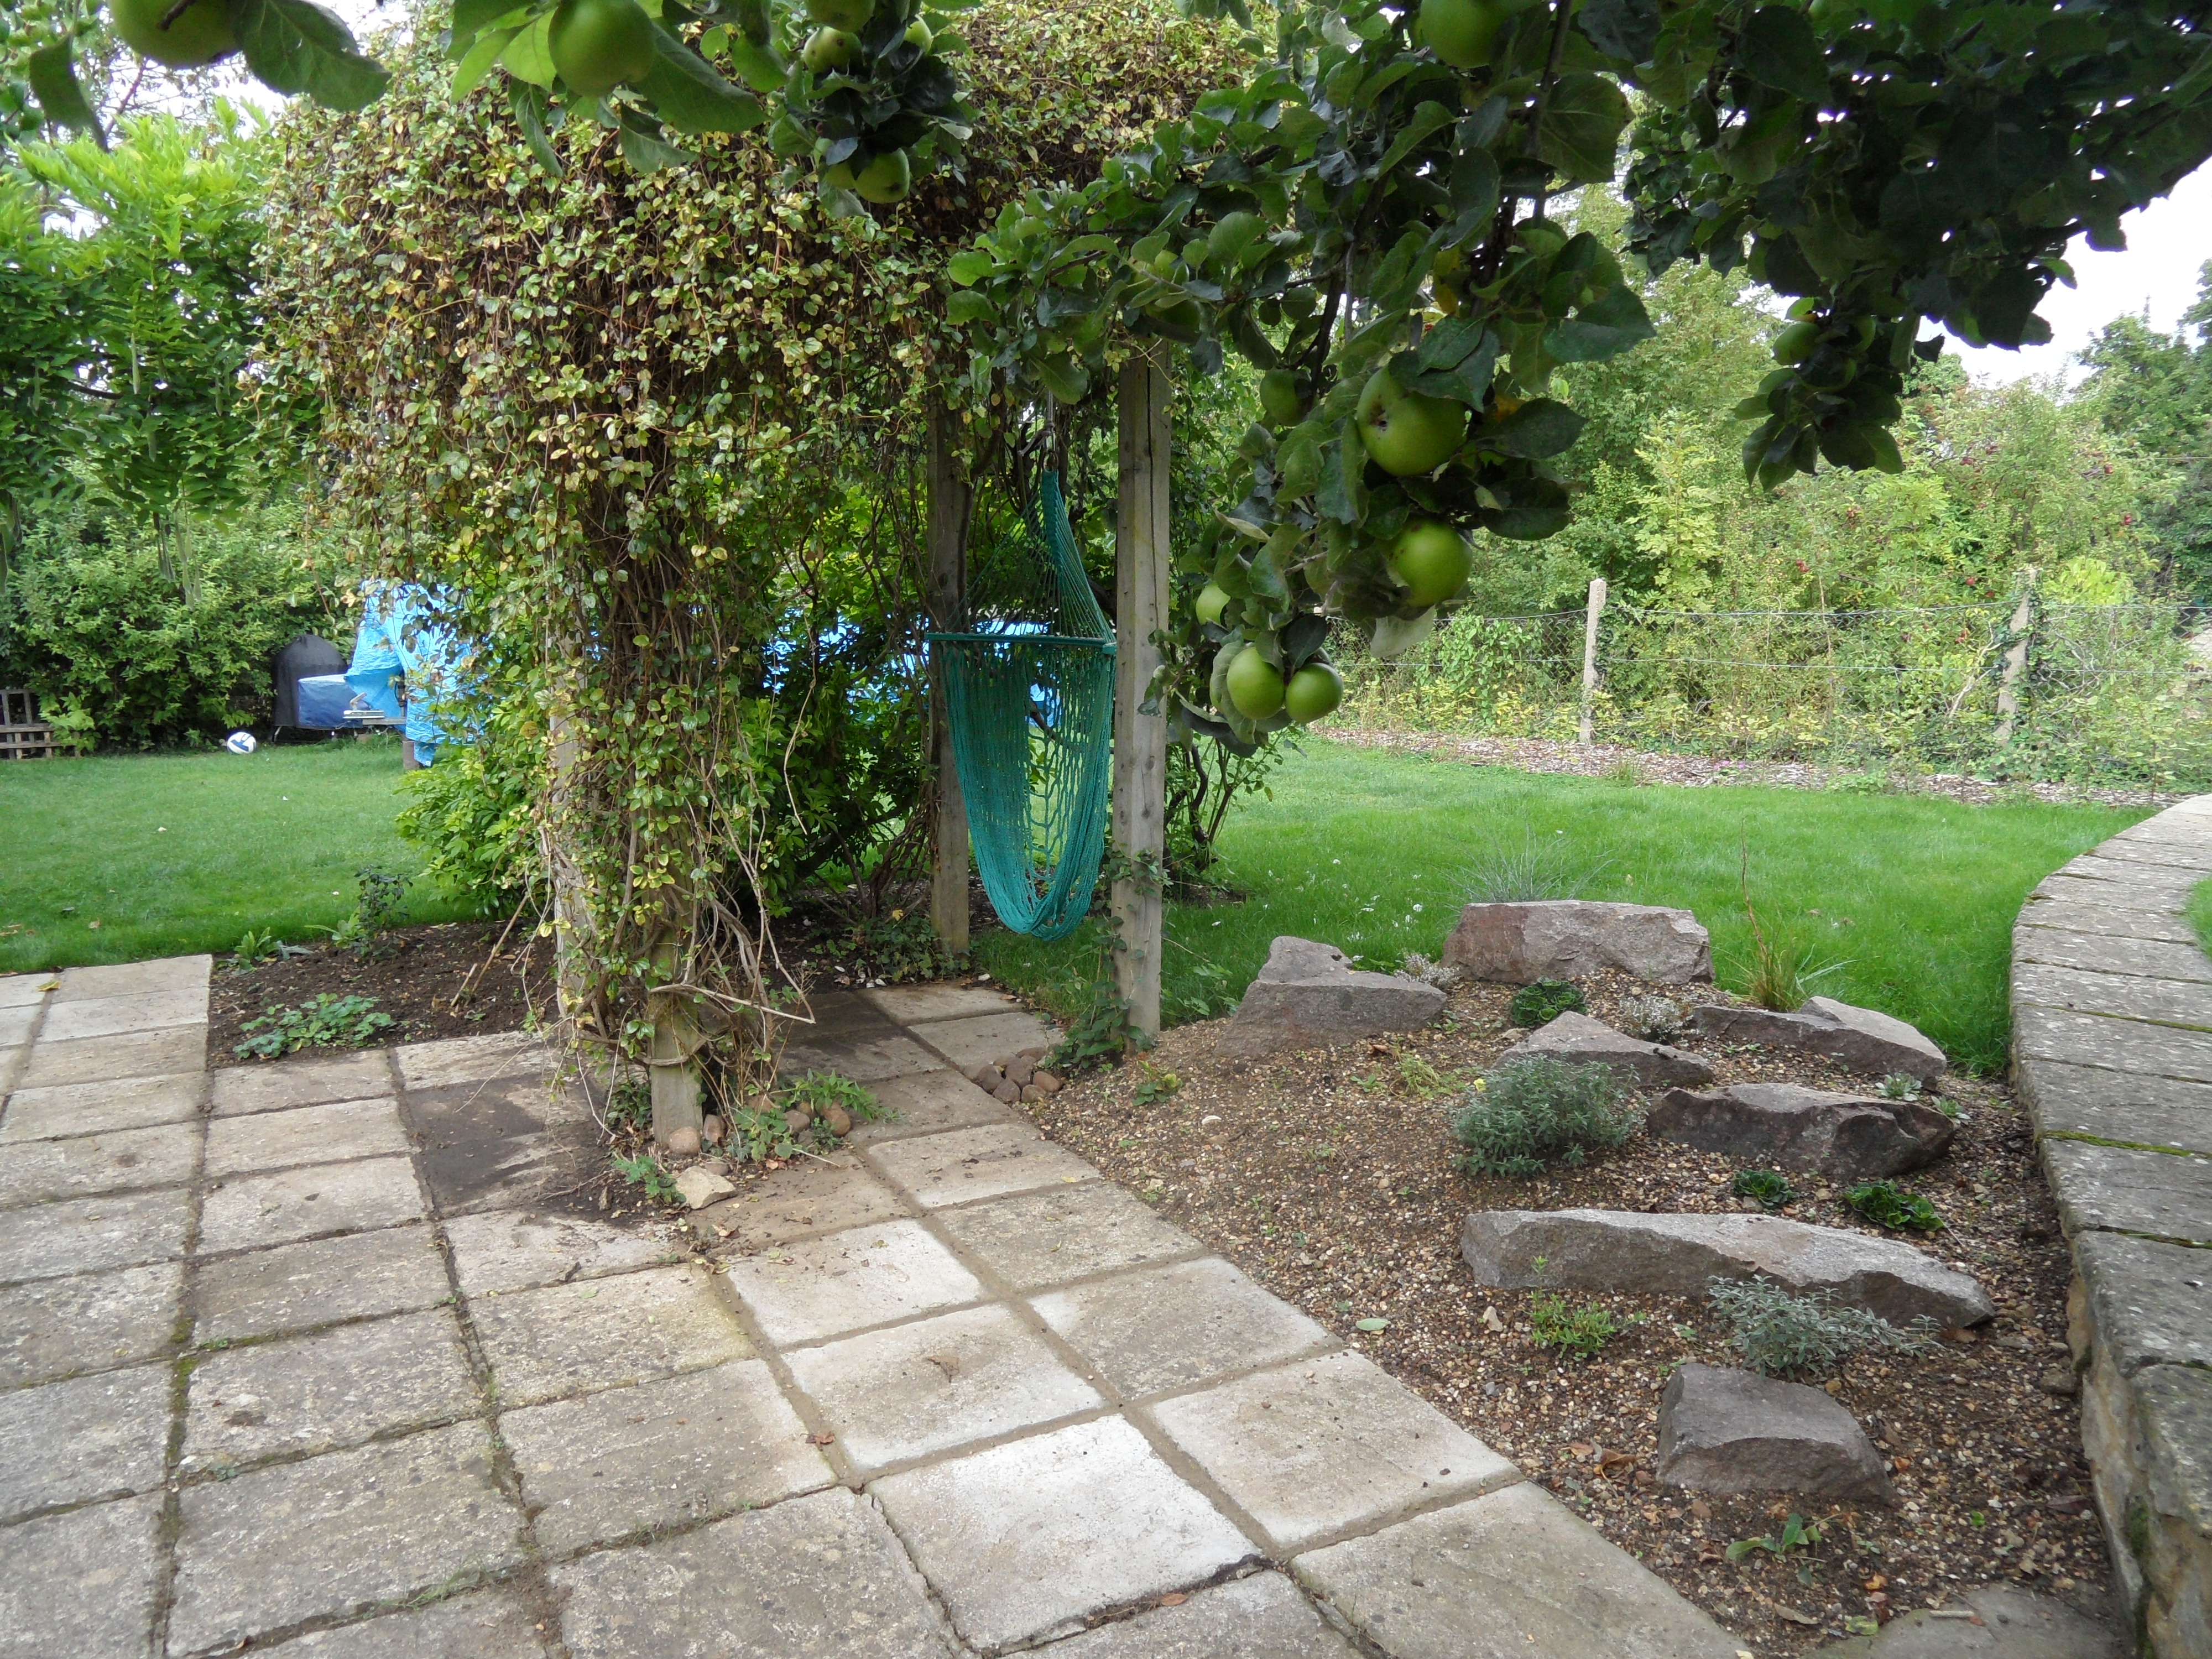  garden design bedfordshire